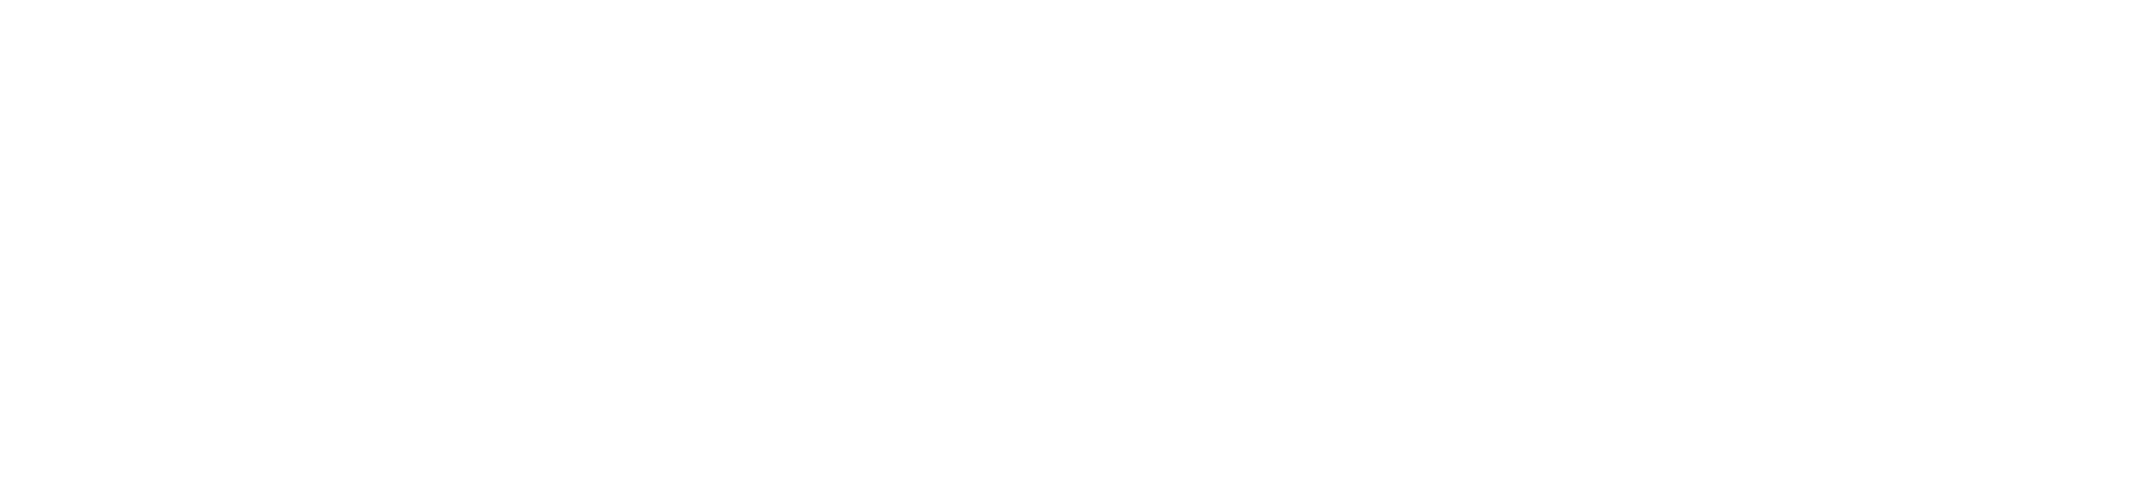 Spring Health-full logo-white